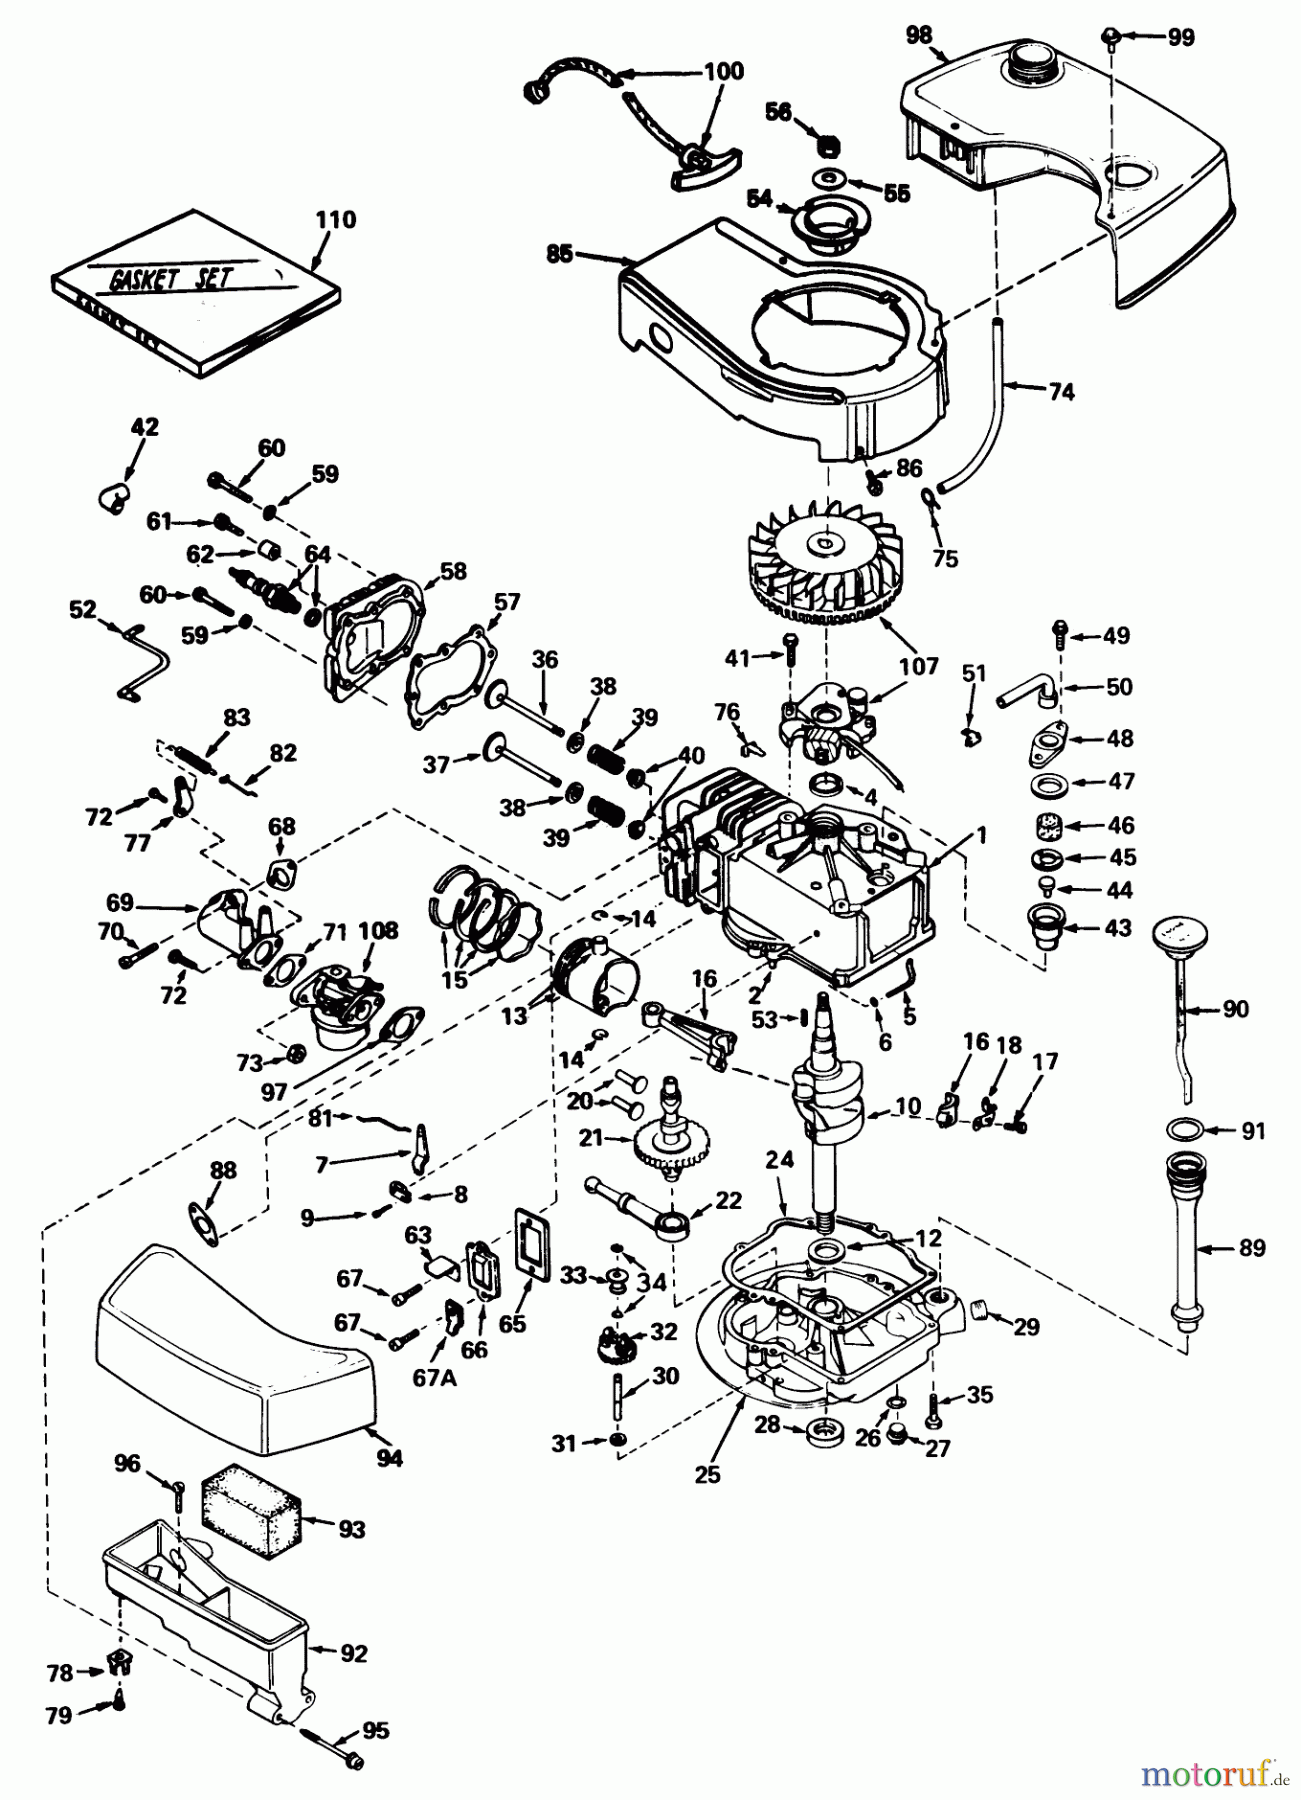  Toro Neu Mowers, Walk-Behind Seite 1 20660 - Toro Lawnmower, 1974 (4000001-4999999) ENGINE MODEL NO. TNT 120-12001 (MOWER MODEL NO. 20660)